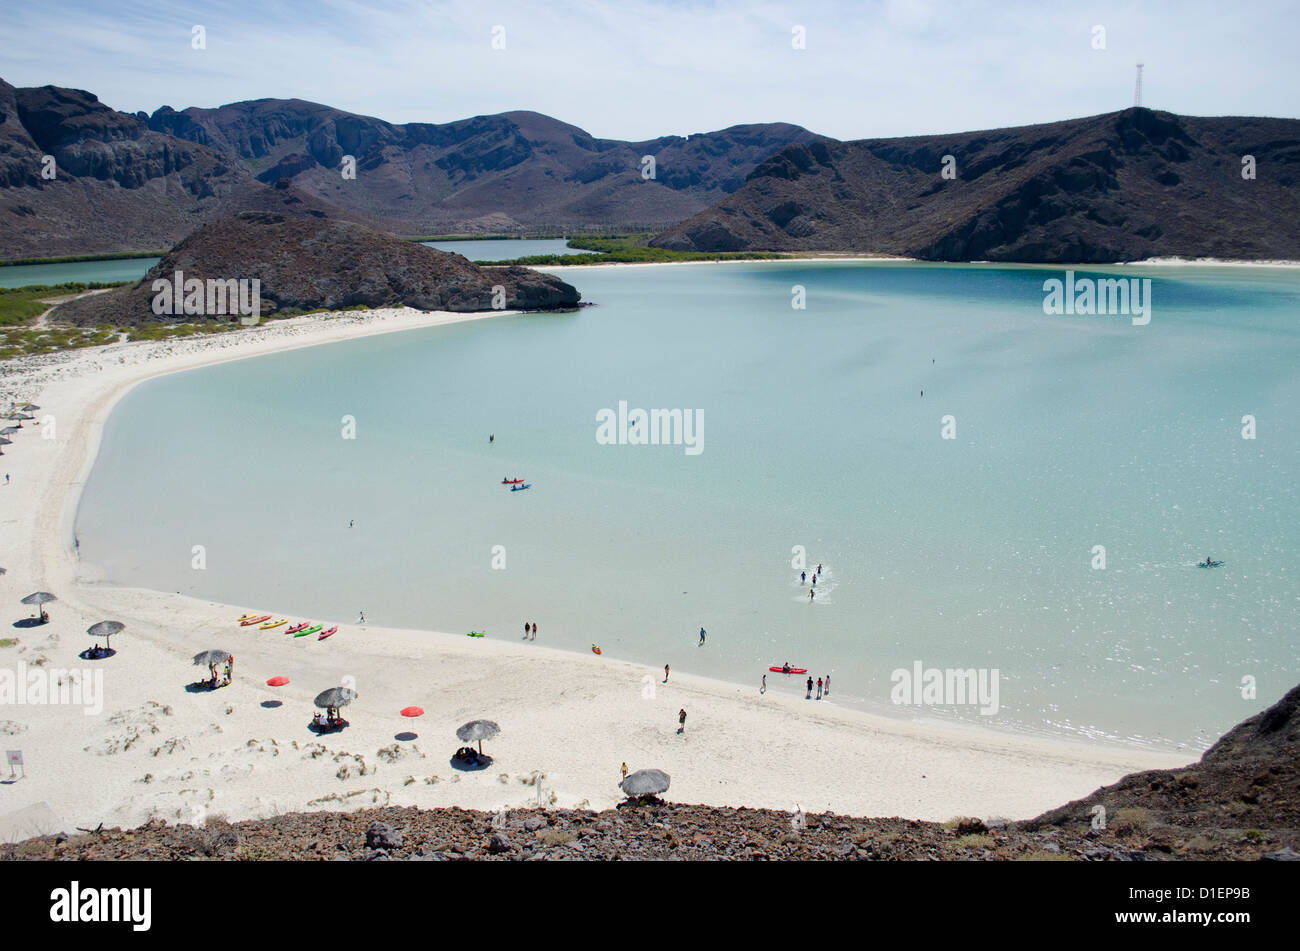 Balandra spiaggia sul mare di Cortez a nord di La Paz Baja California Sur Messico con le sue acque limpide e la famosa roccia del fungo Foto Stock